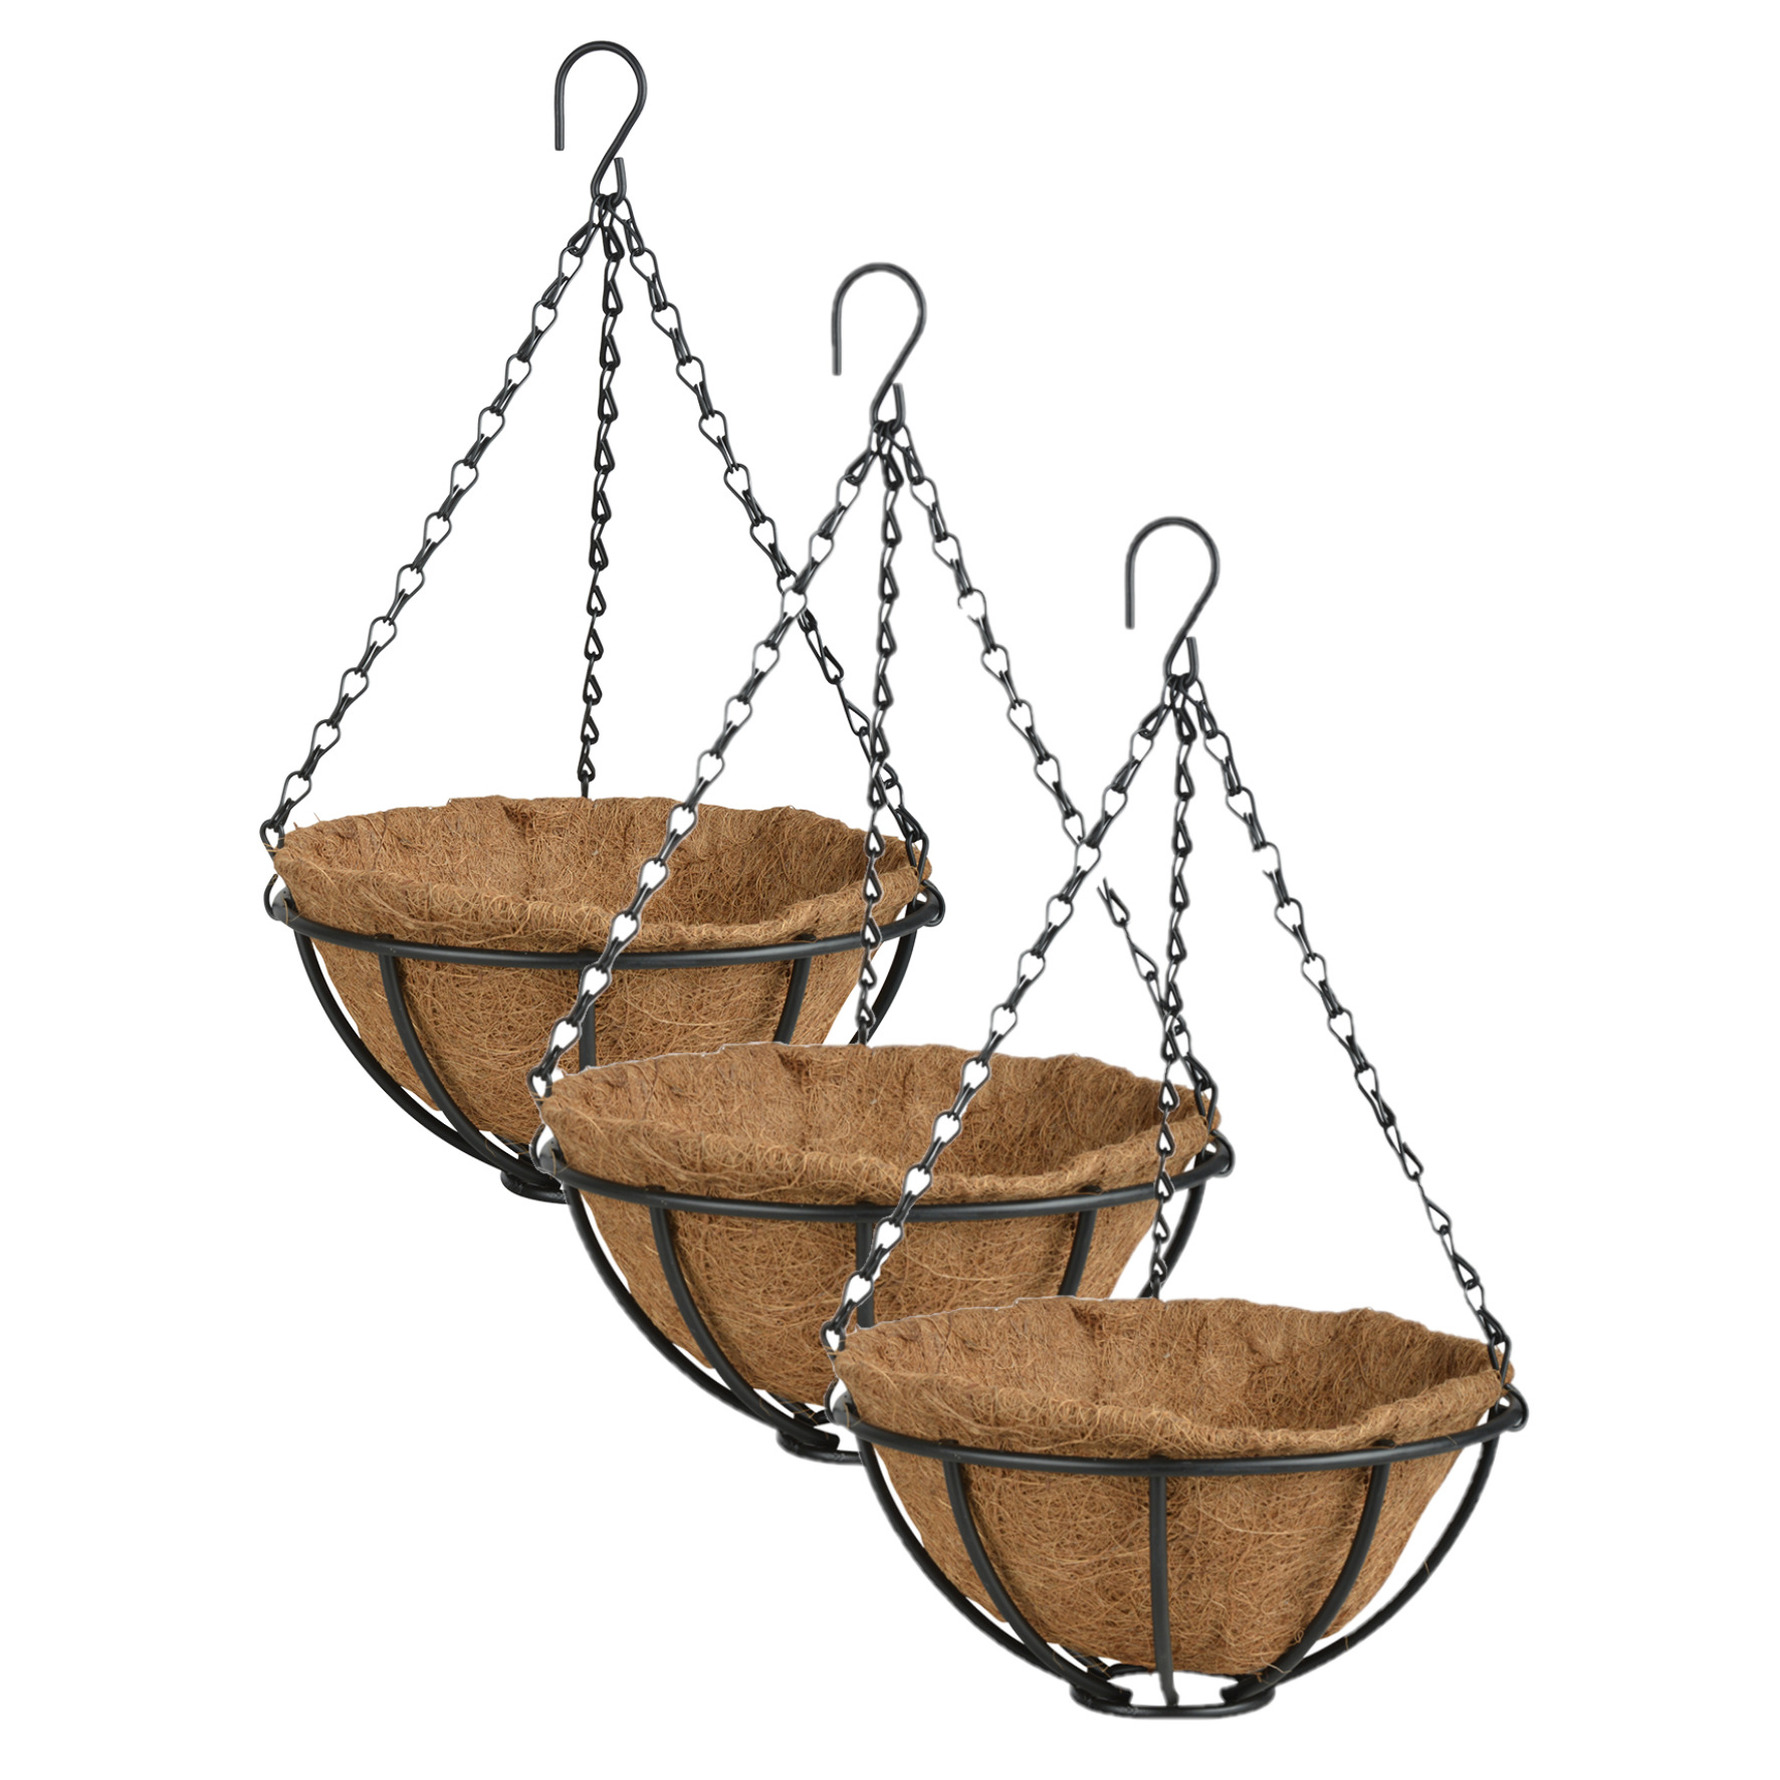 3x stuks metalen hanging baskets-plantenbakken met ketting 25 cm inclusief kokosinlegvel